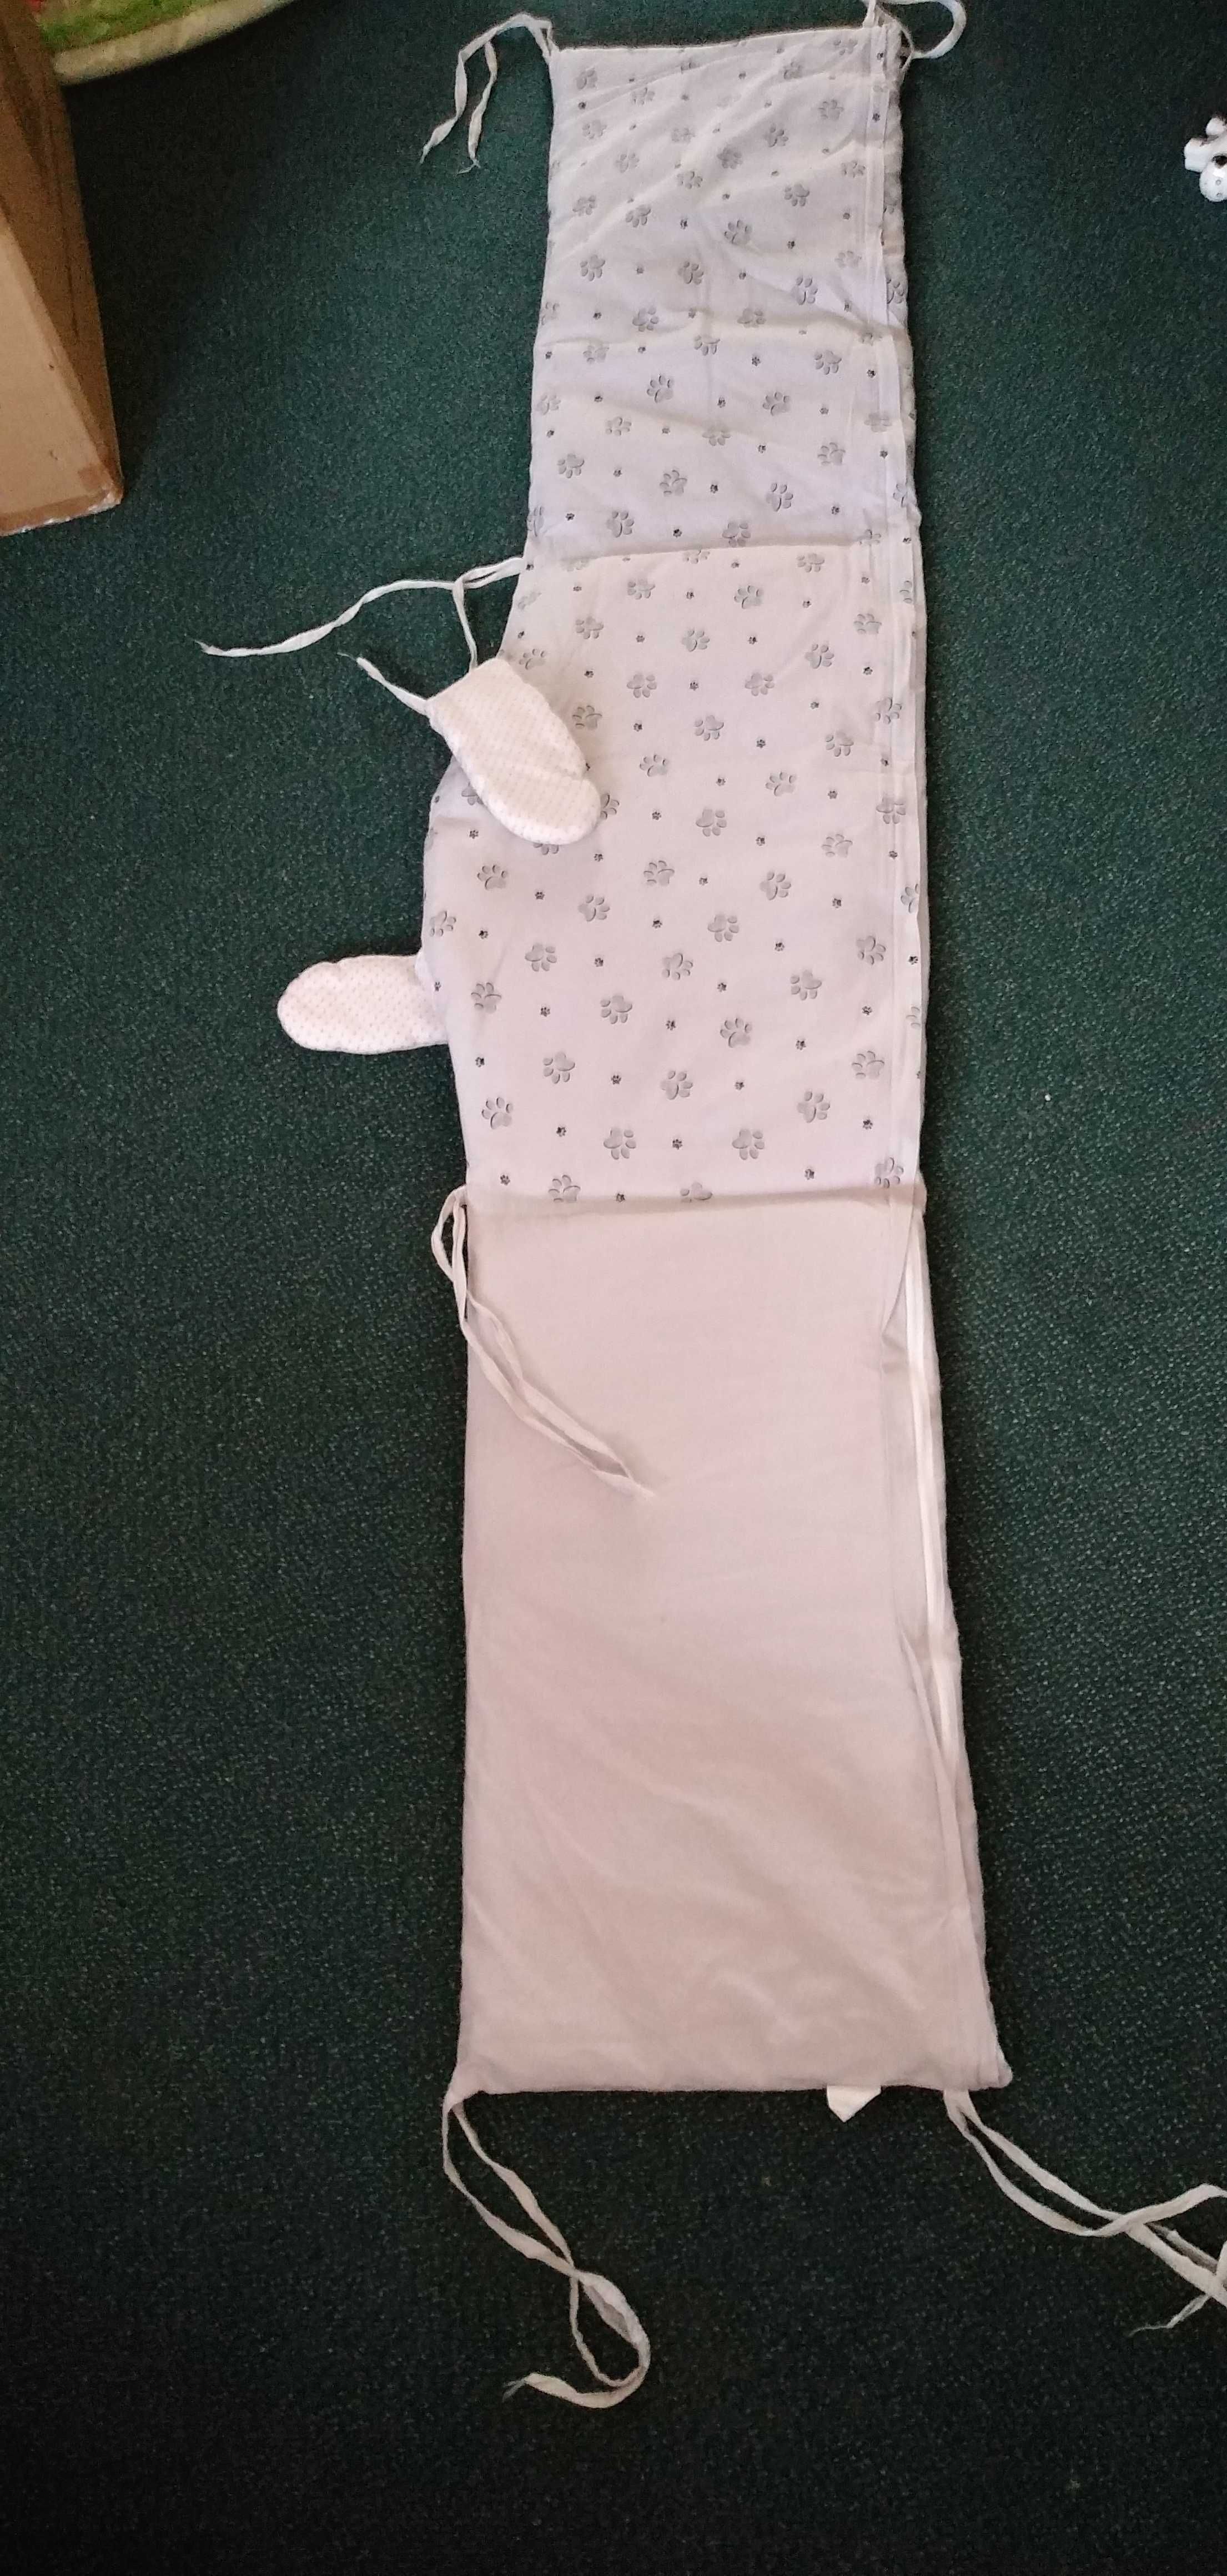 Ochraniacz na szczebelki do łóżeczka dla niemowlaka (różne wzory)